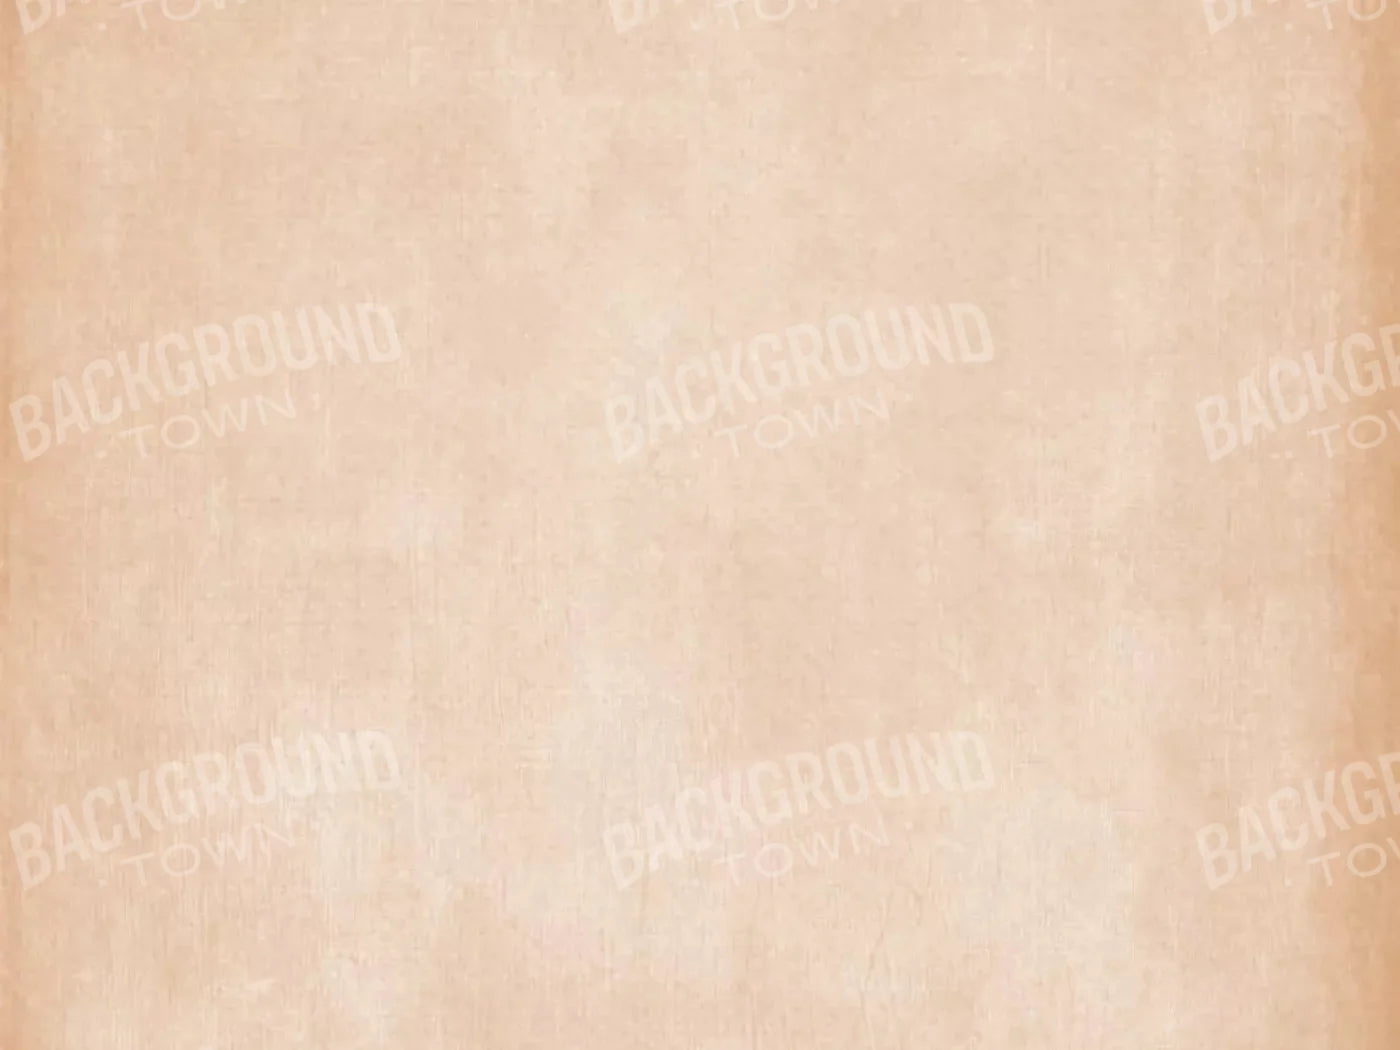 Daydream Peach 7X5 Ultracloth ( 84 X 60 Inch ) Backdrop